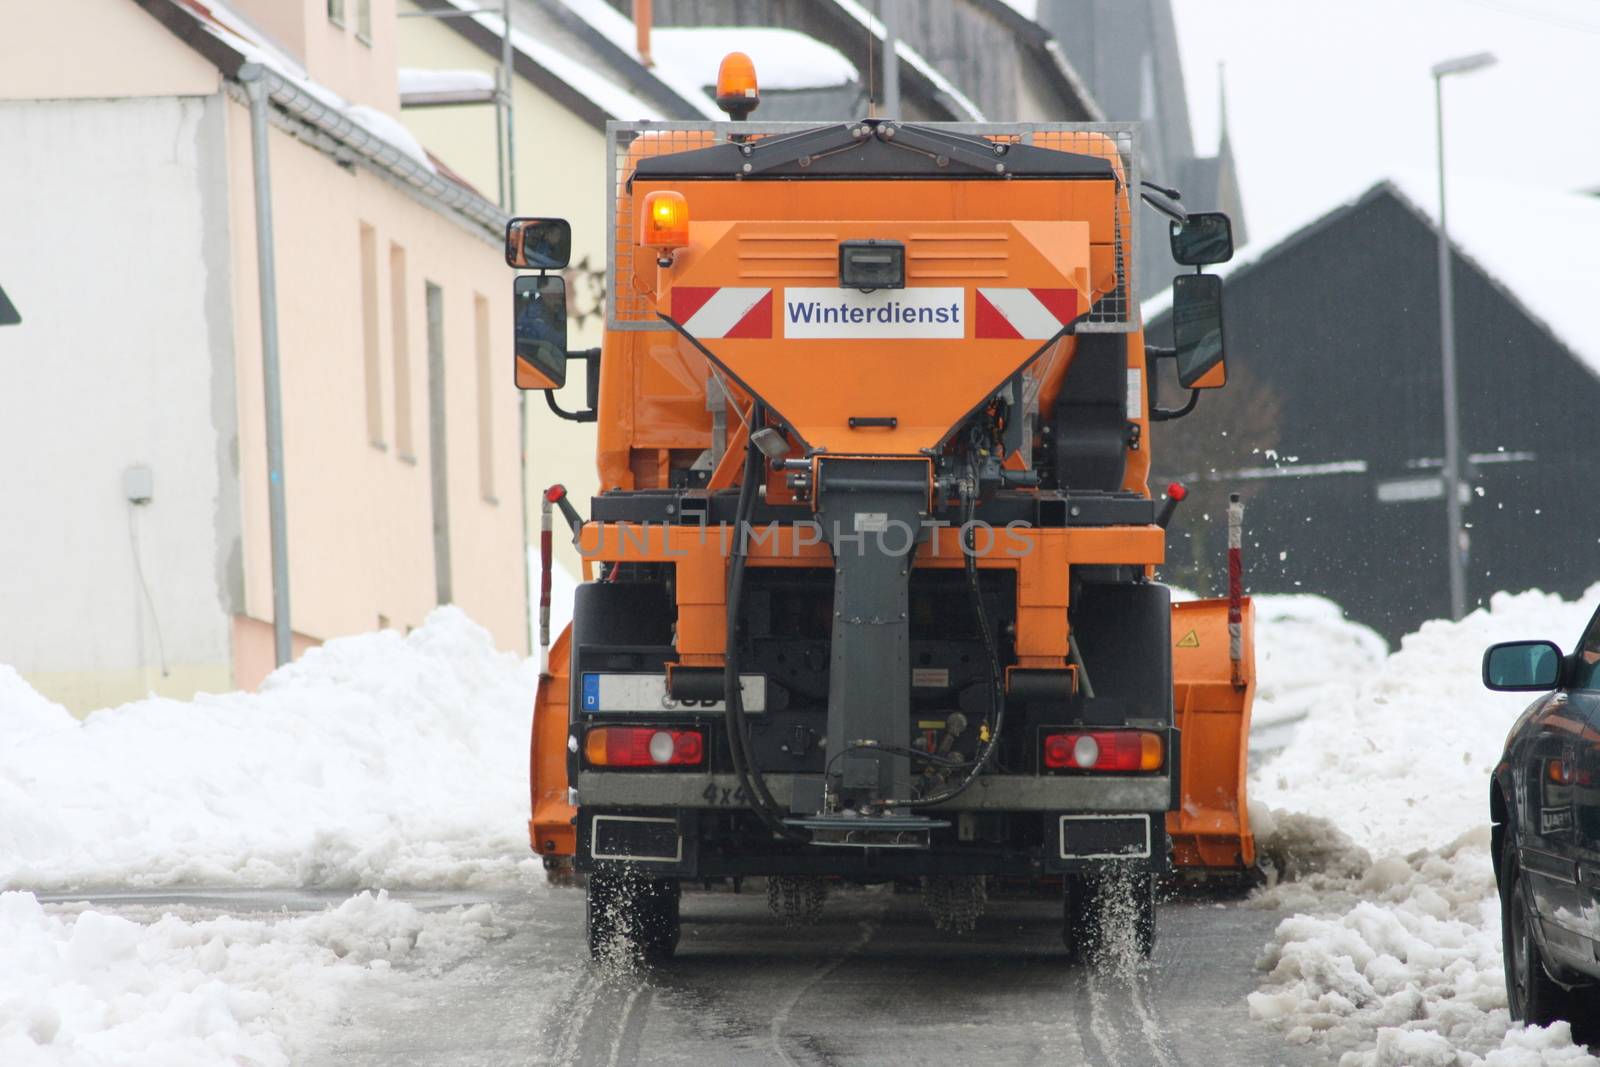 Winter service vehicle in use in heavy snow-fall  Winterdienstfahrzeug im Einsatz bei starkem Schneefall by hadot